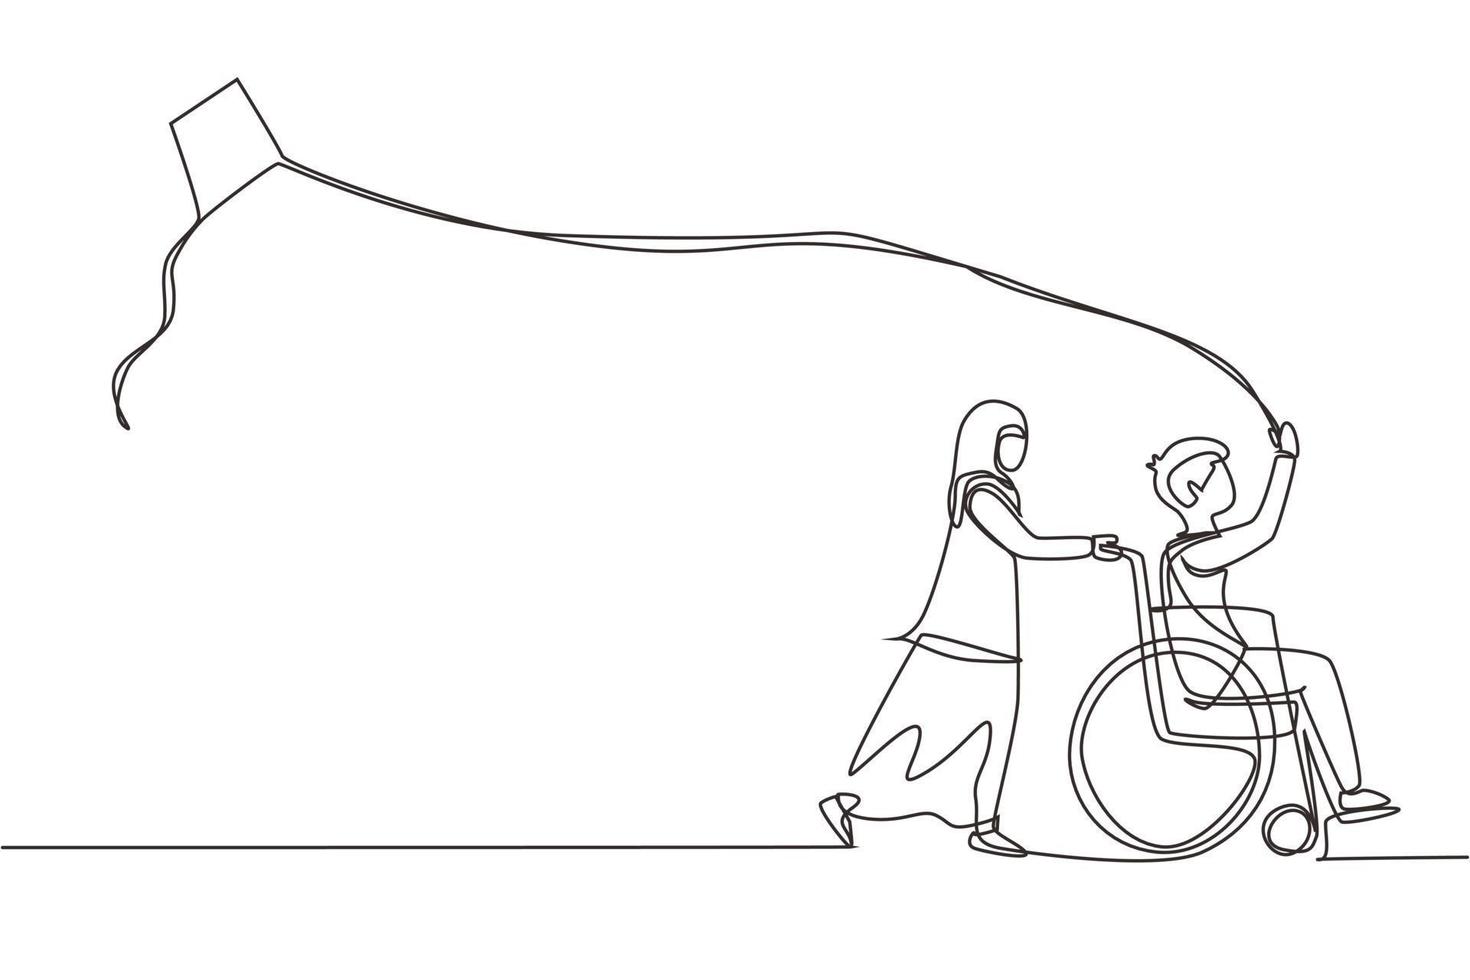 unico disegno a tratteggio bambino felice concetto disabile. piccola ragazza araba disegnata a mano che spinge ragazzo in sedia a rotelle con aquilone volante. i disabili si divertono all'aperto. illustrazione vettoriale di disegno a linea continua